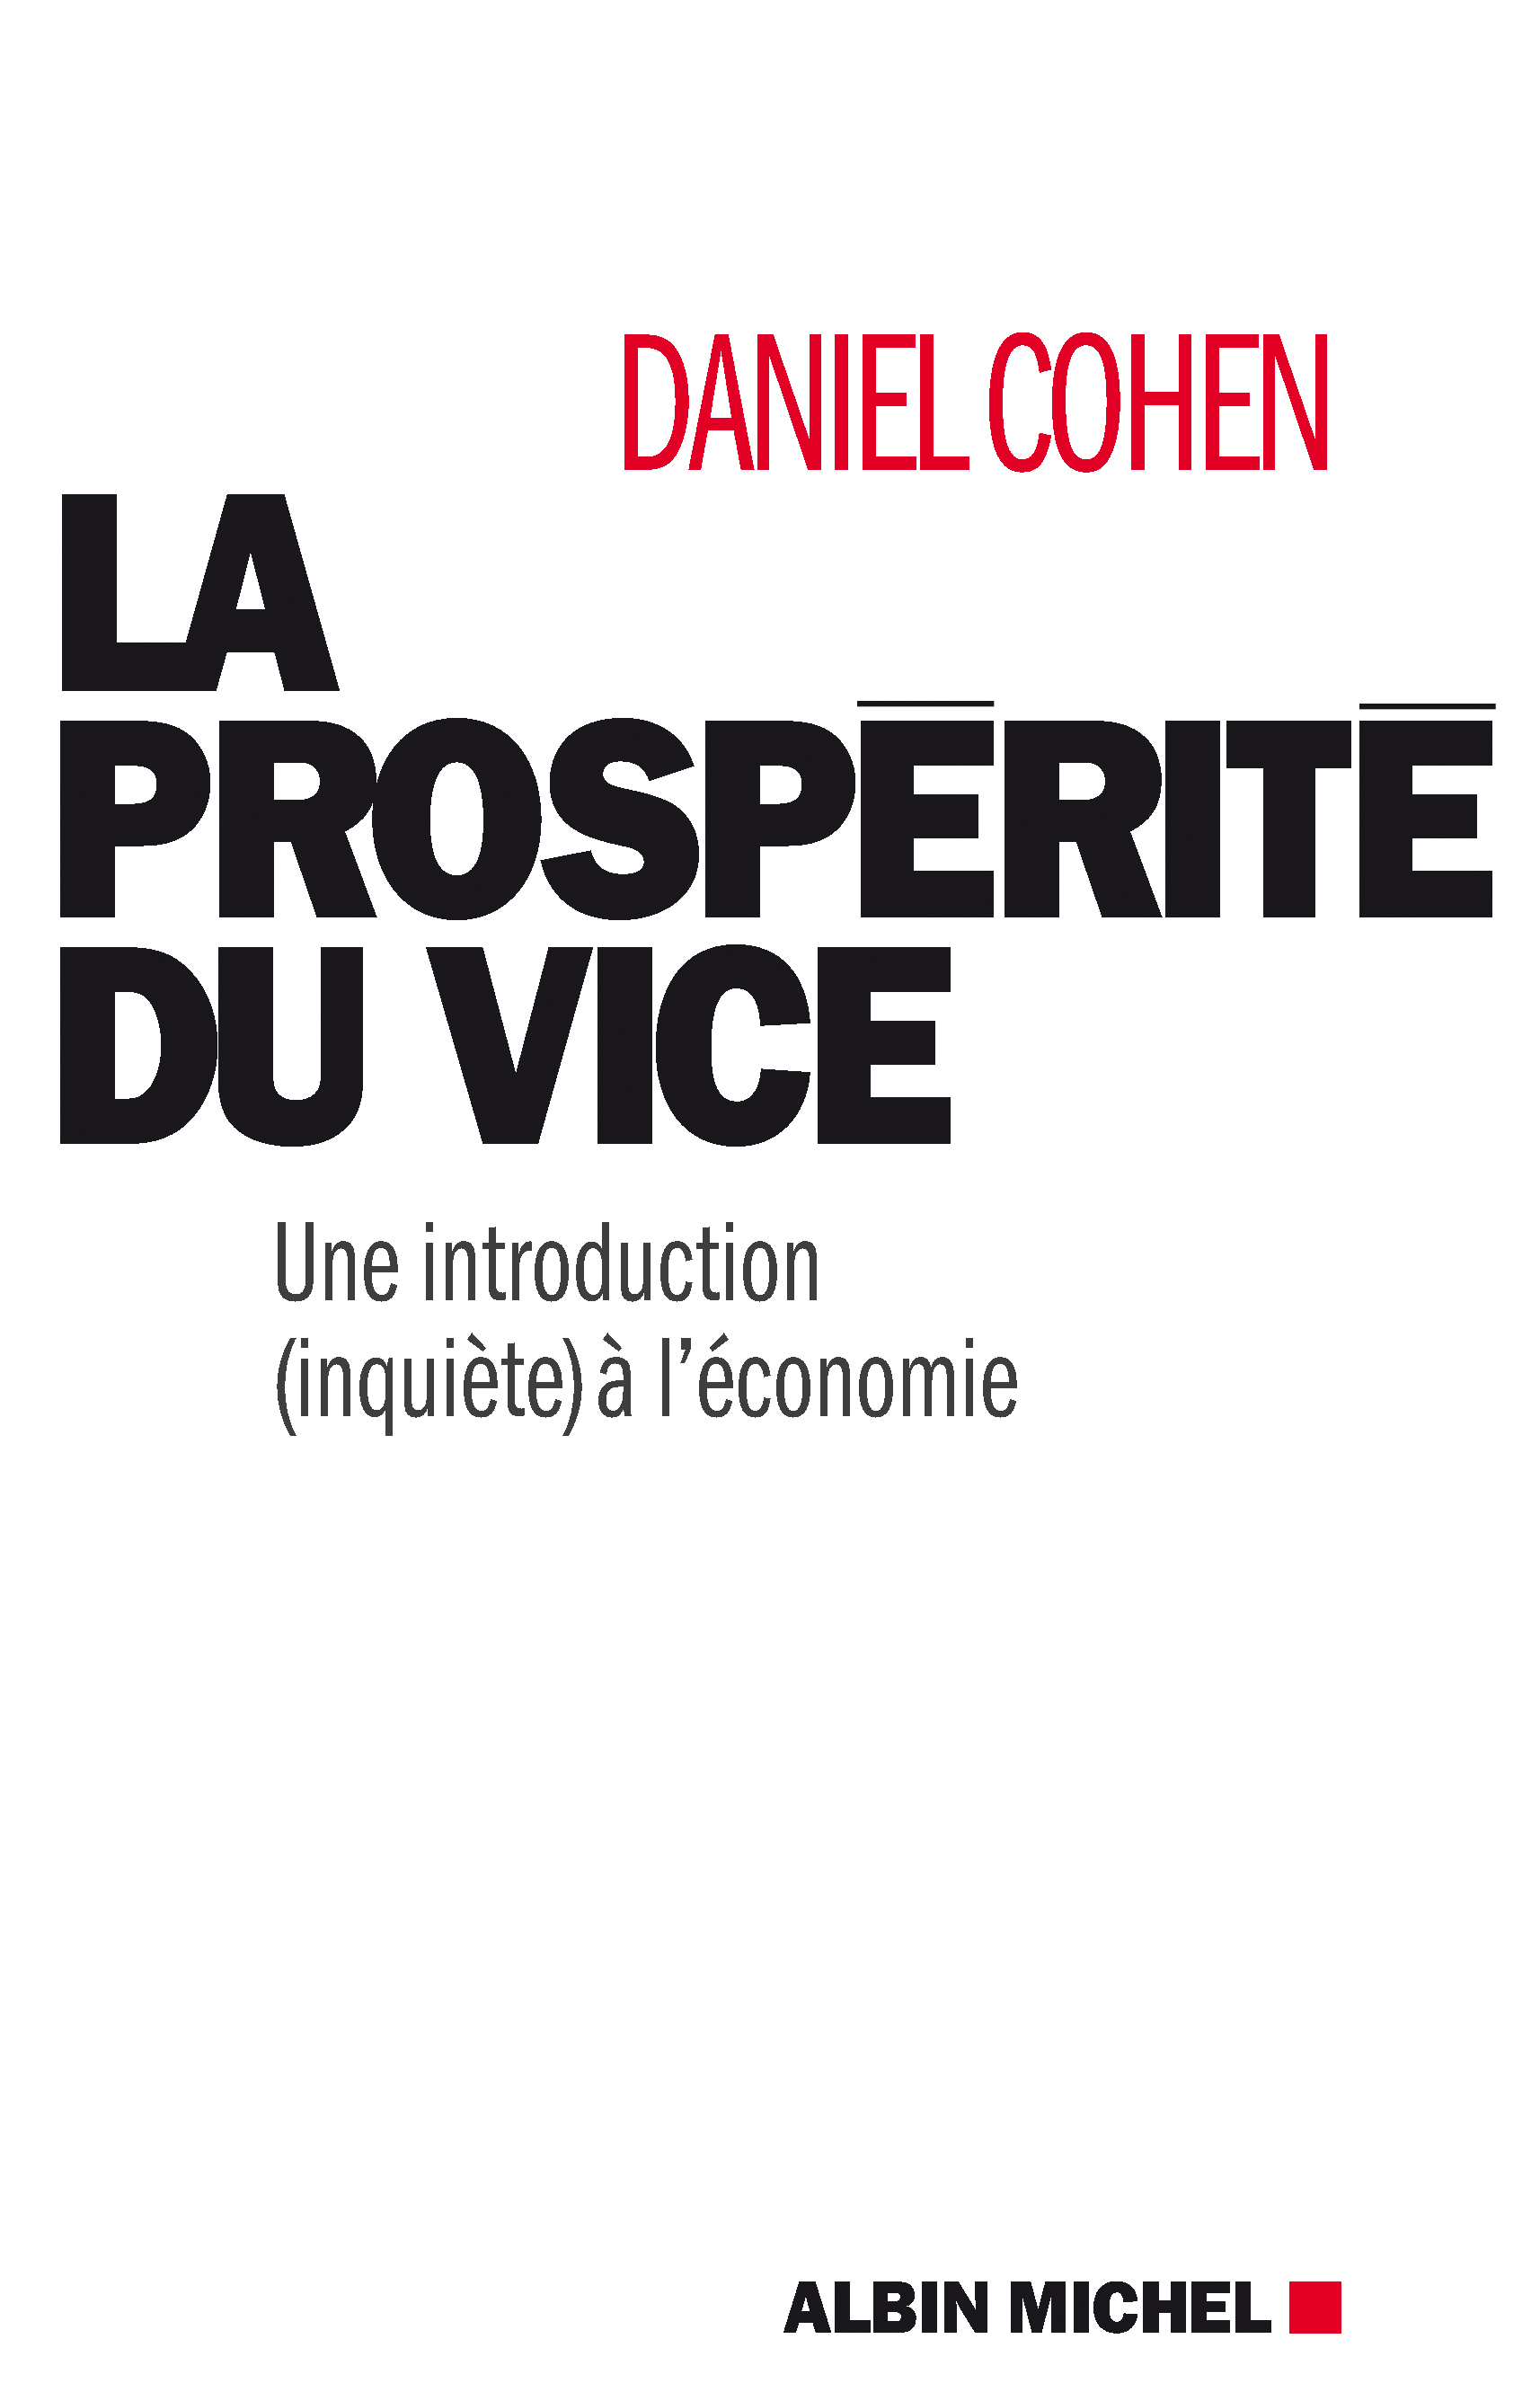 Couverture du livre La Prospérité du vice